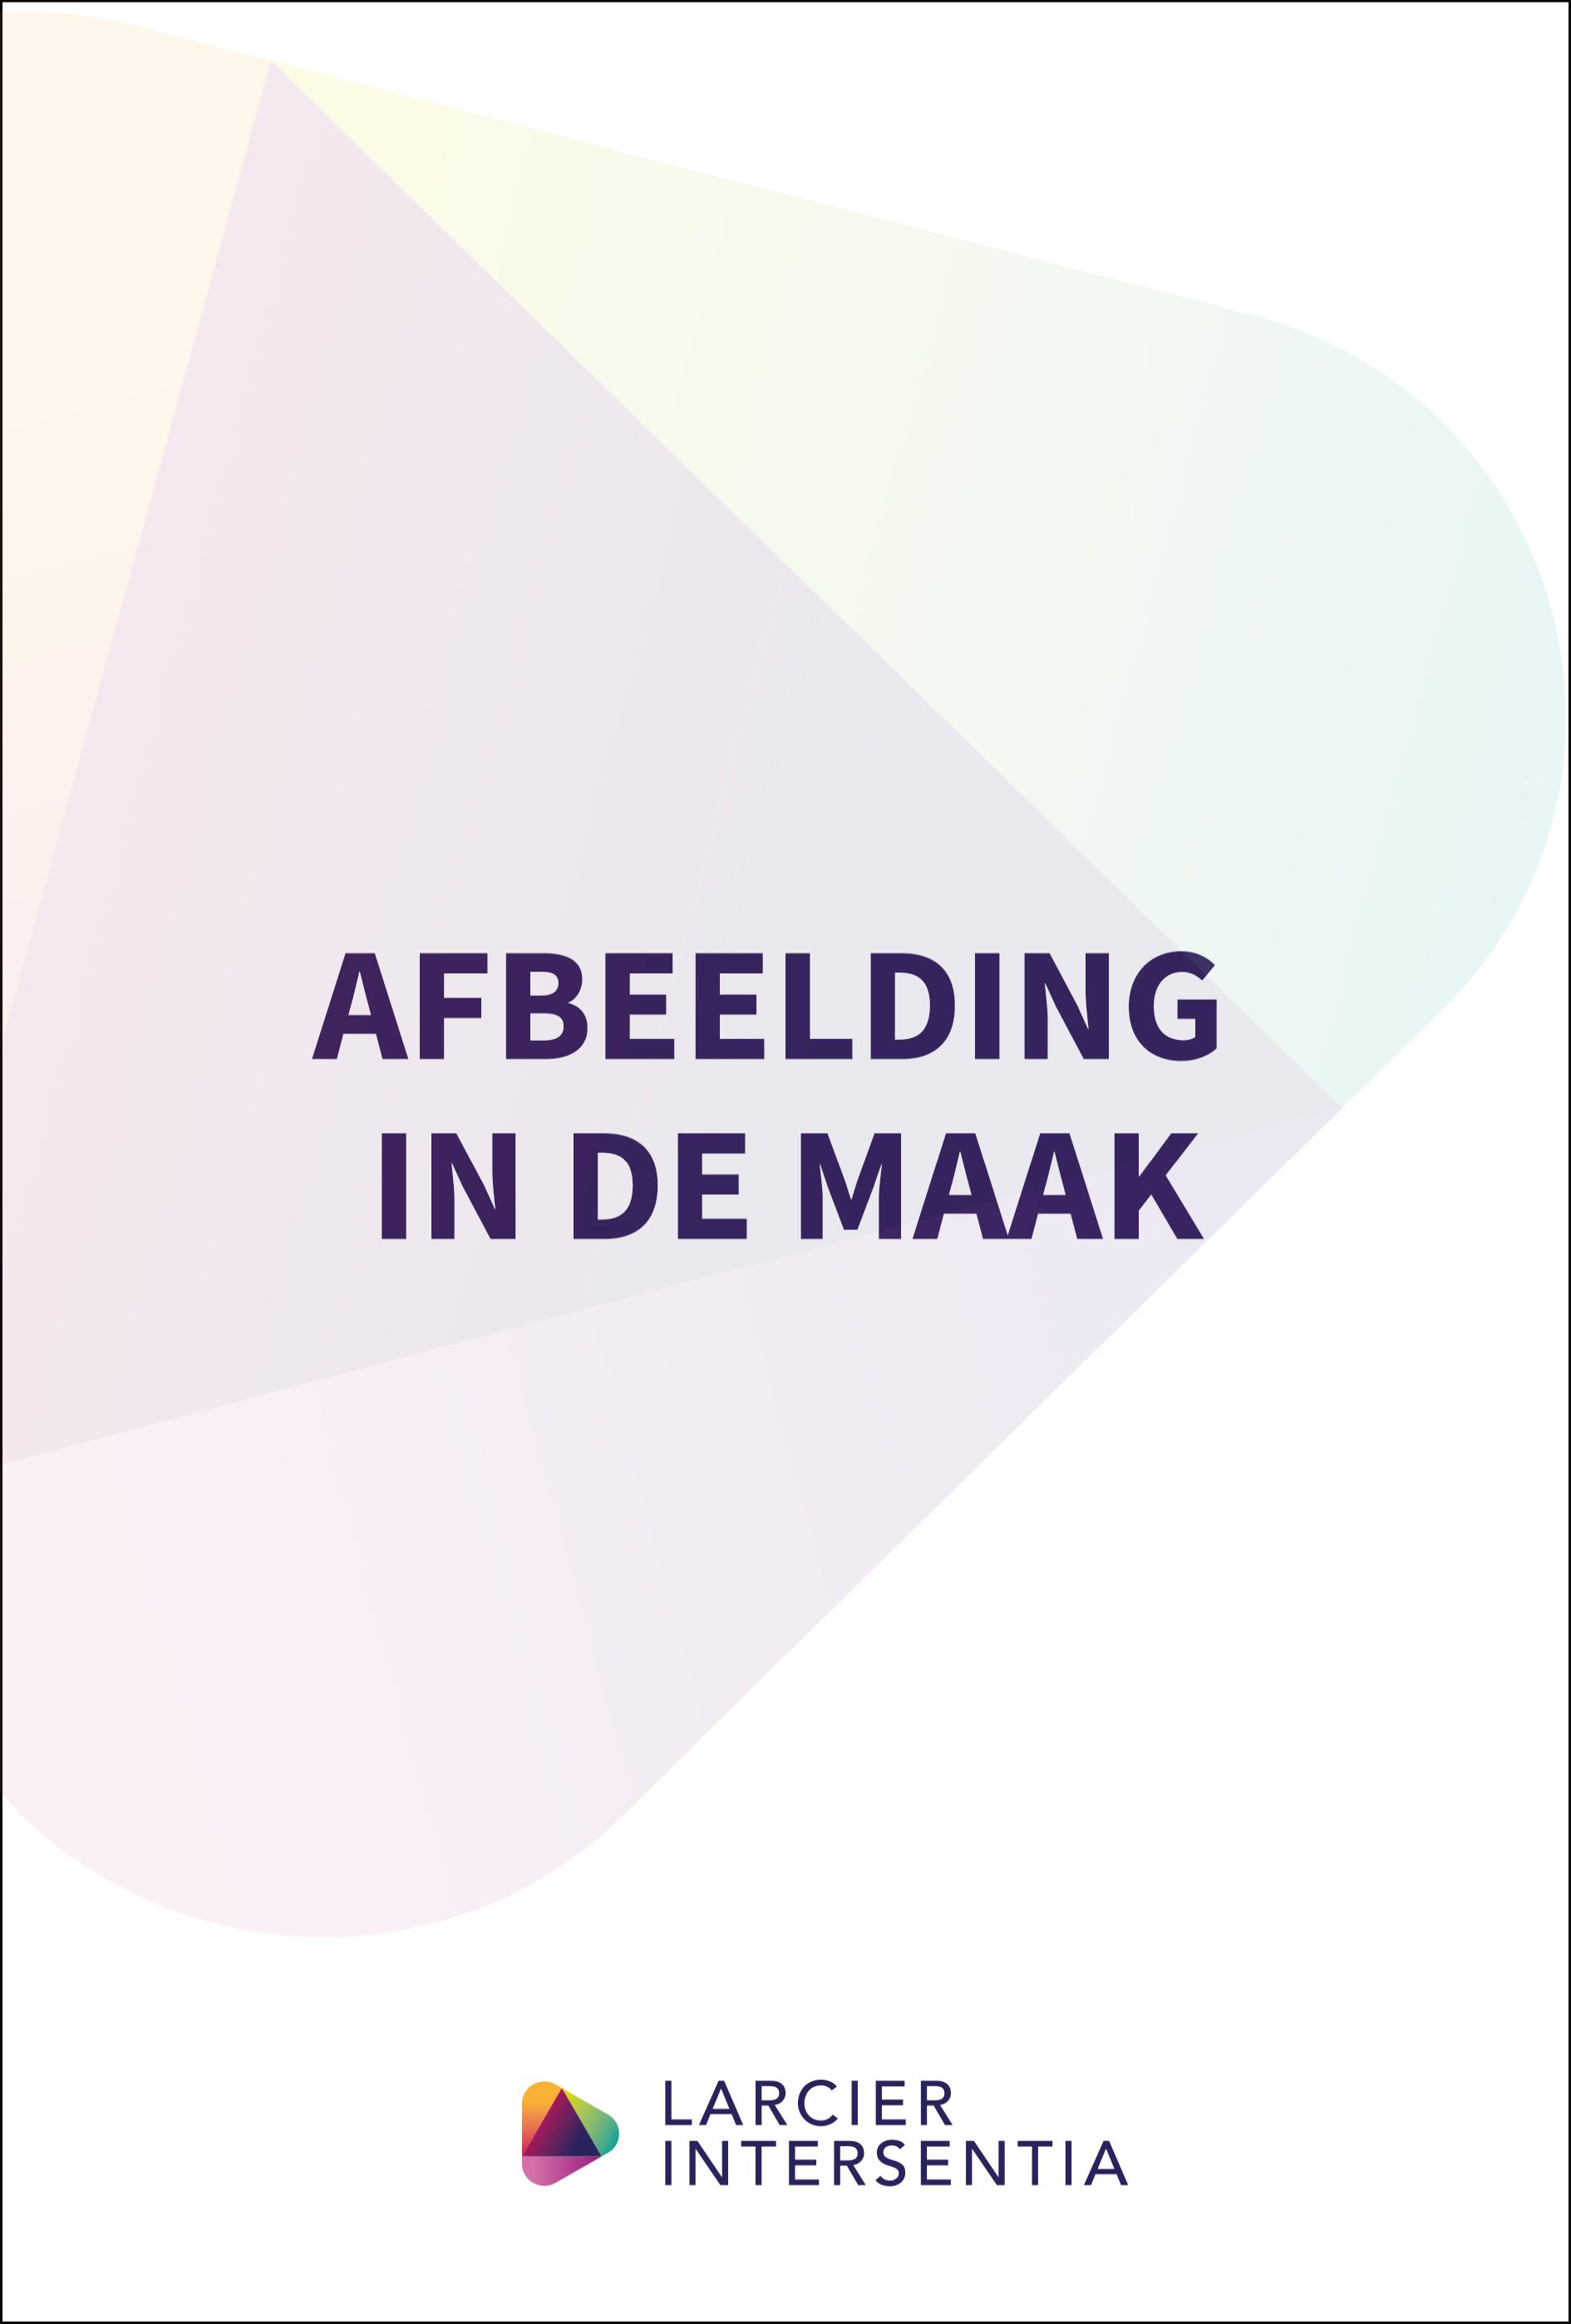 Zelfrealisatie bij onteigening in Vlaanderen en Nederland